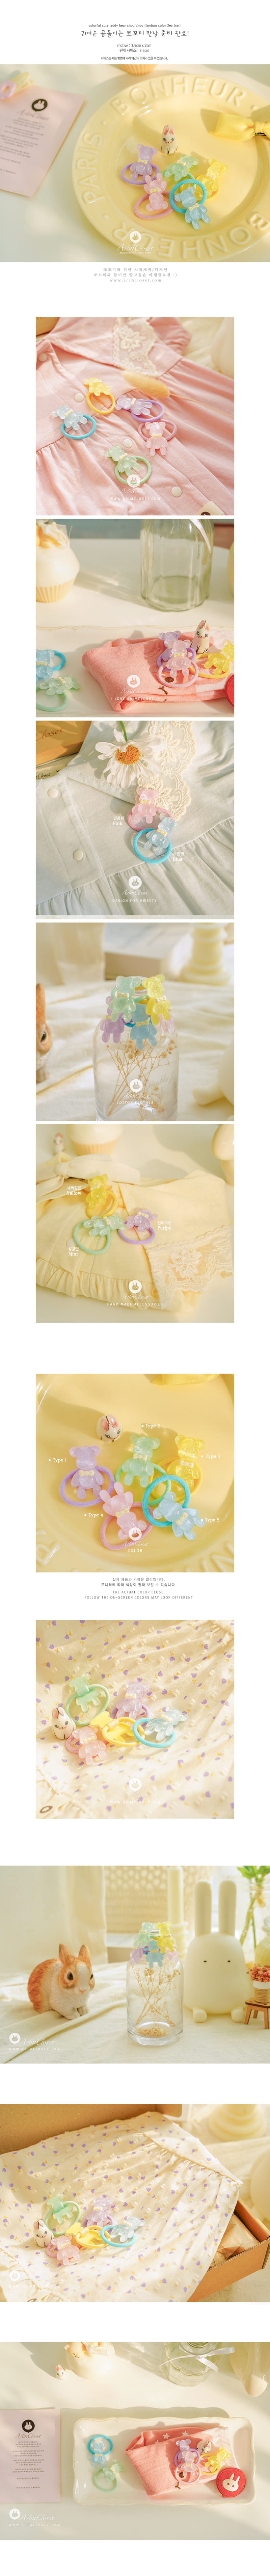 Arim Closet - Korean Baby Fashion - #onlinebabyboutique - Colorful Cute Teddy Bear Chou Chou (landom 2ea 1set) - 2